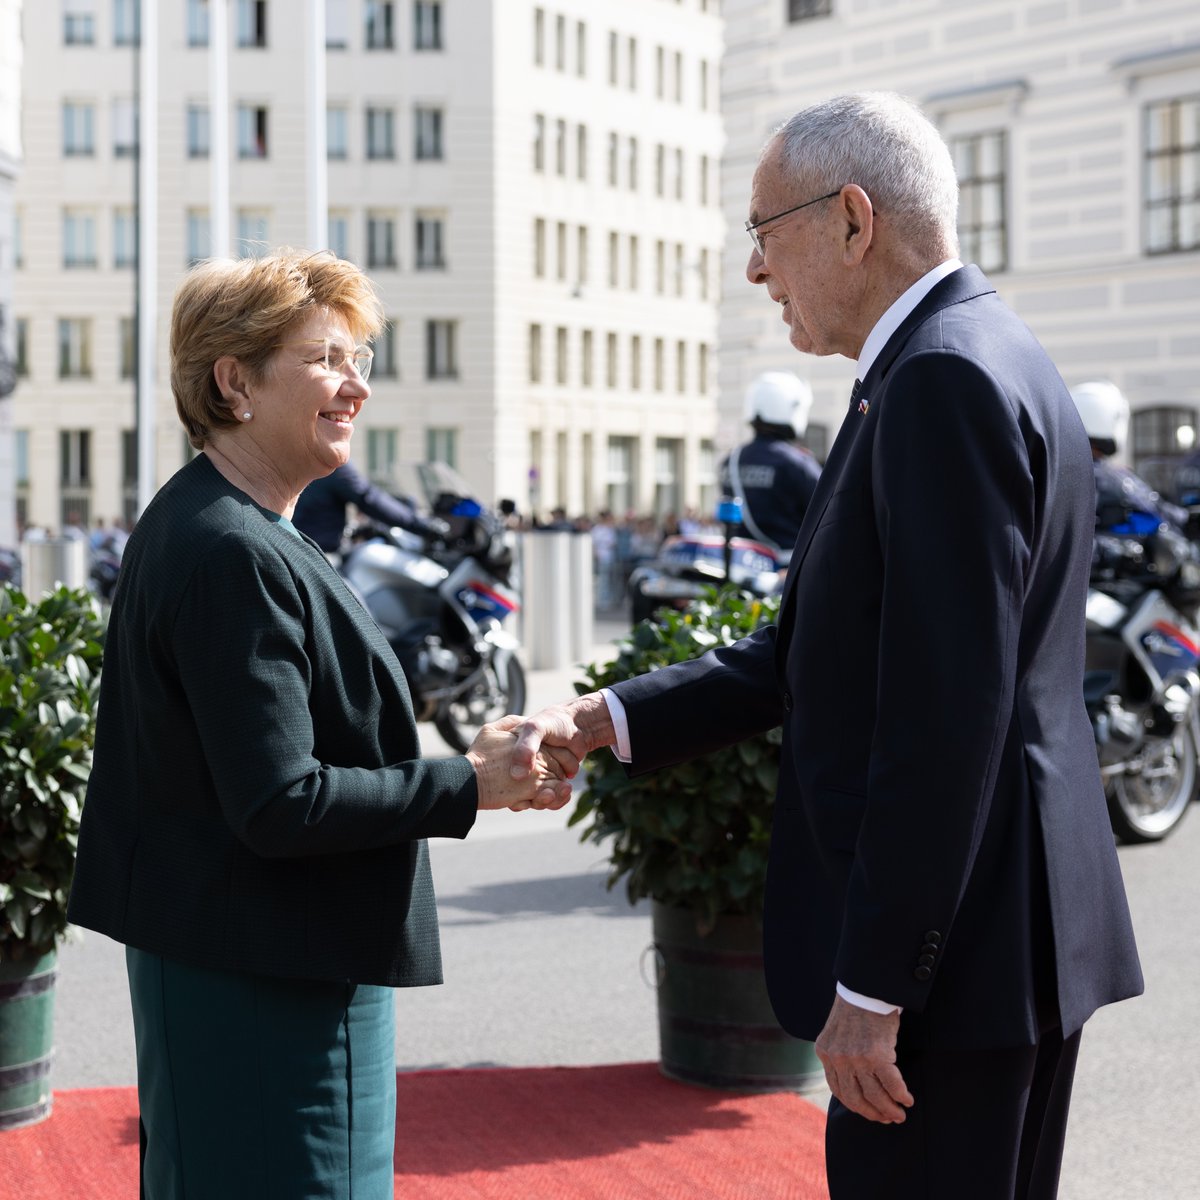 Herzlich Willkommen in Wien, @Violapamherd! 🇦🇹🤝🇨🇭 Der traditionelle jährliche Besuch des Schweizer Staatsoberhauptes ist ein besonderes Zeichen der engen Verbundenheit unserer beiden Länder.